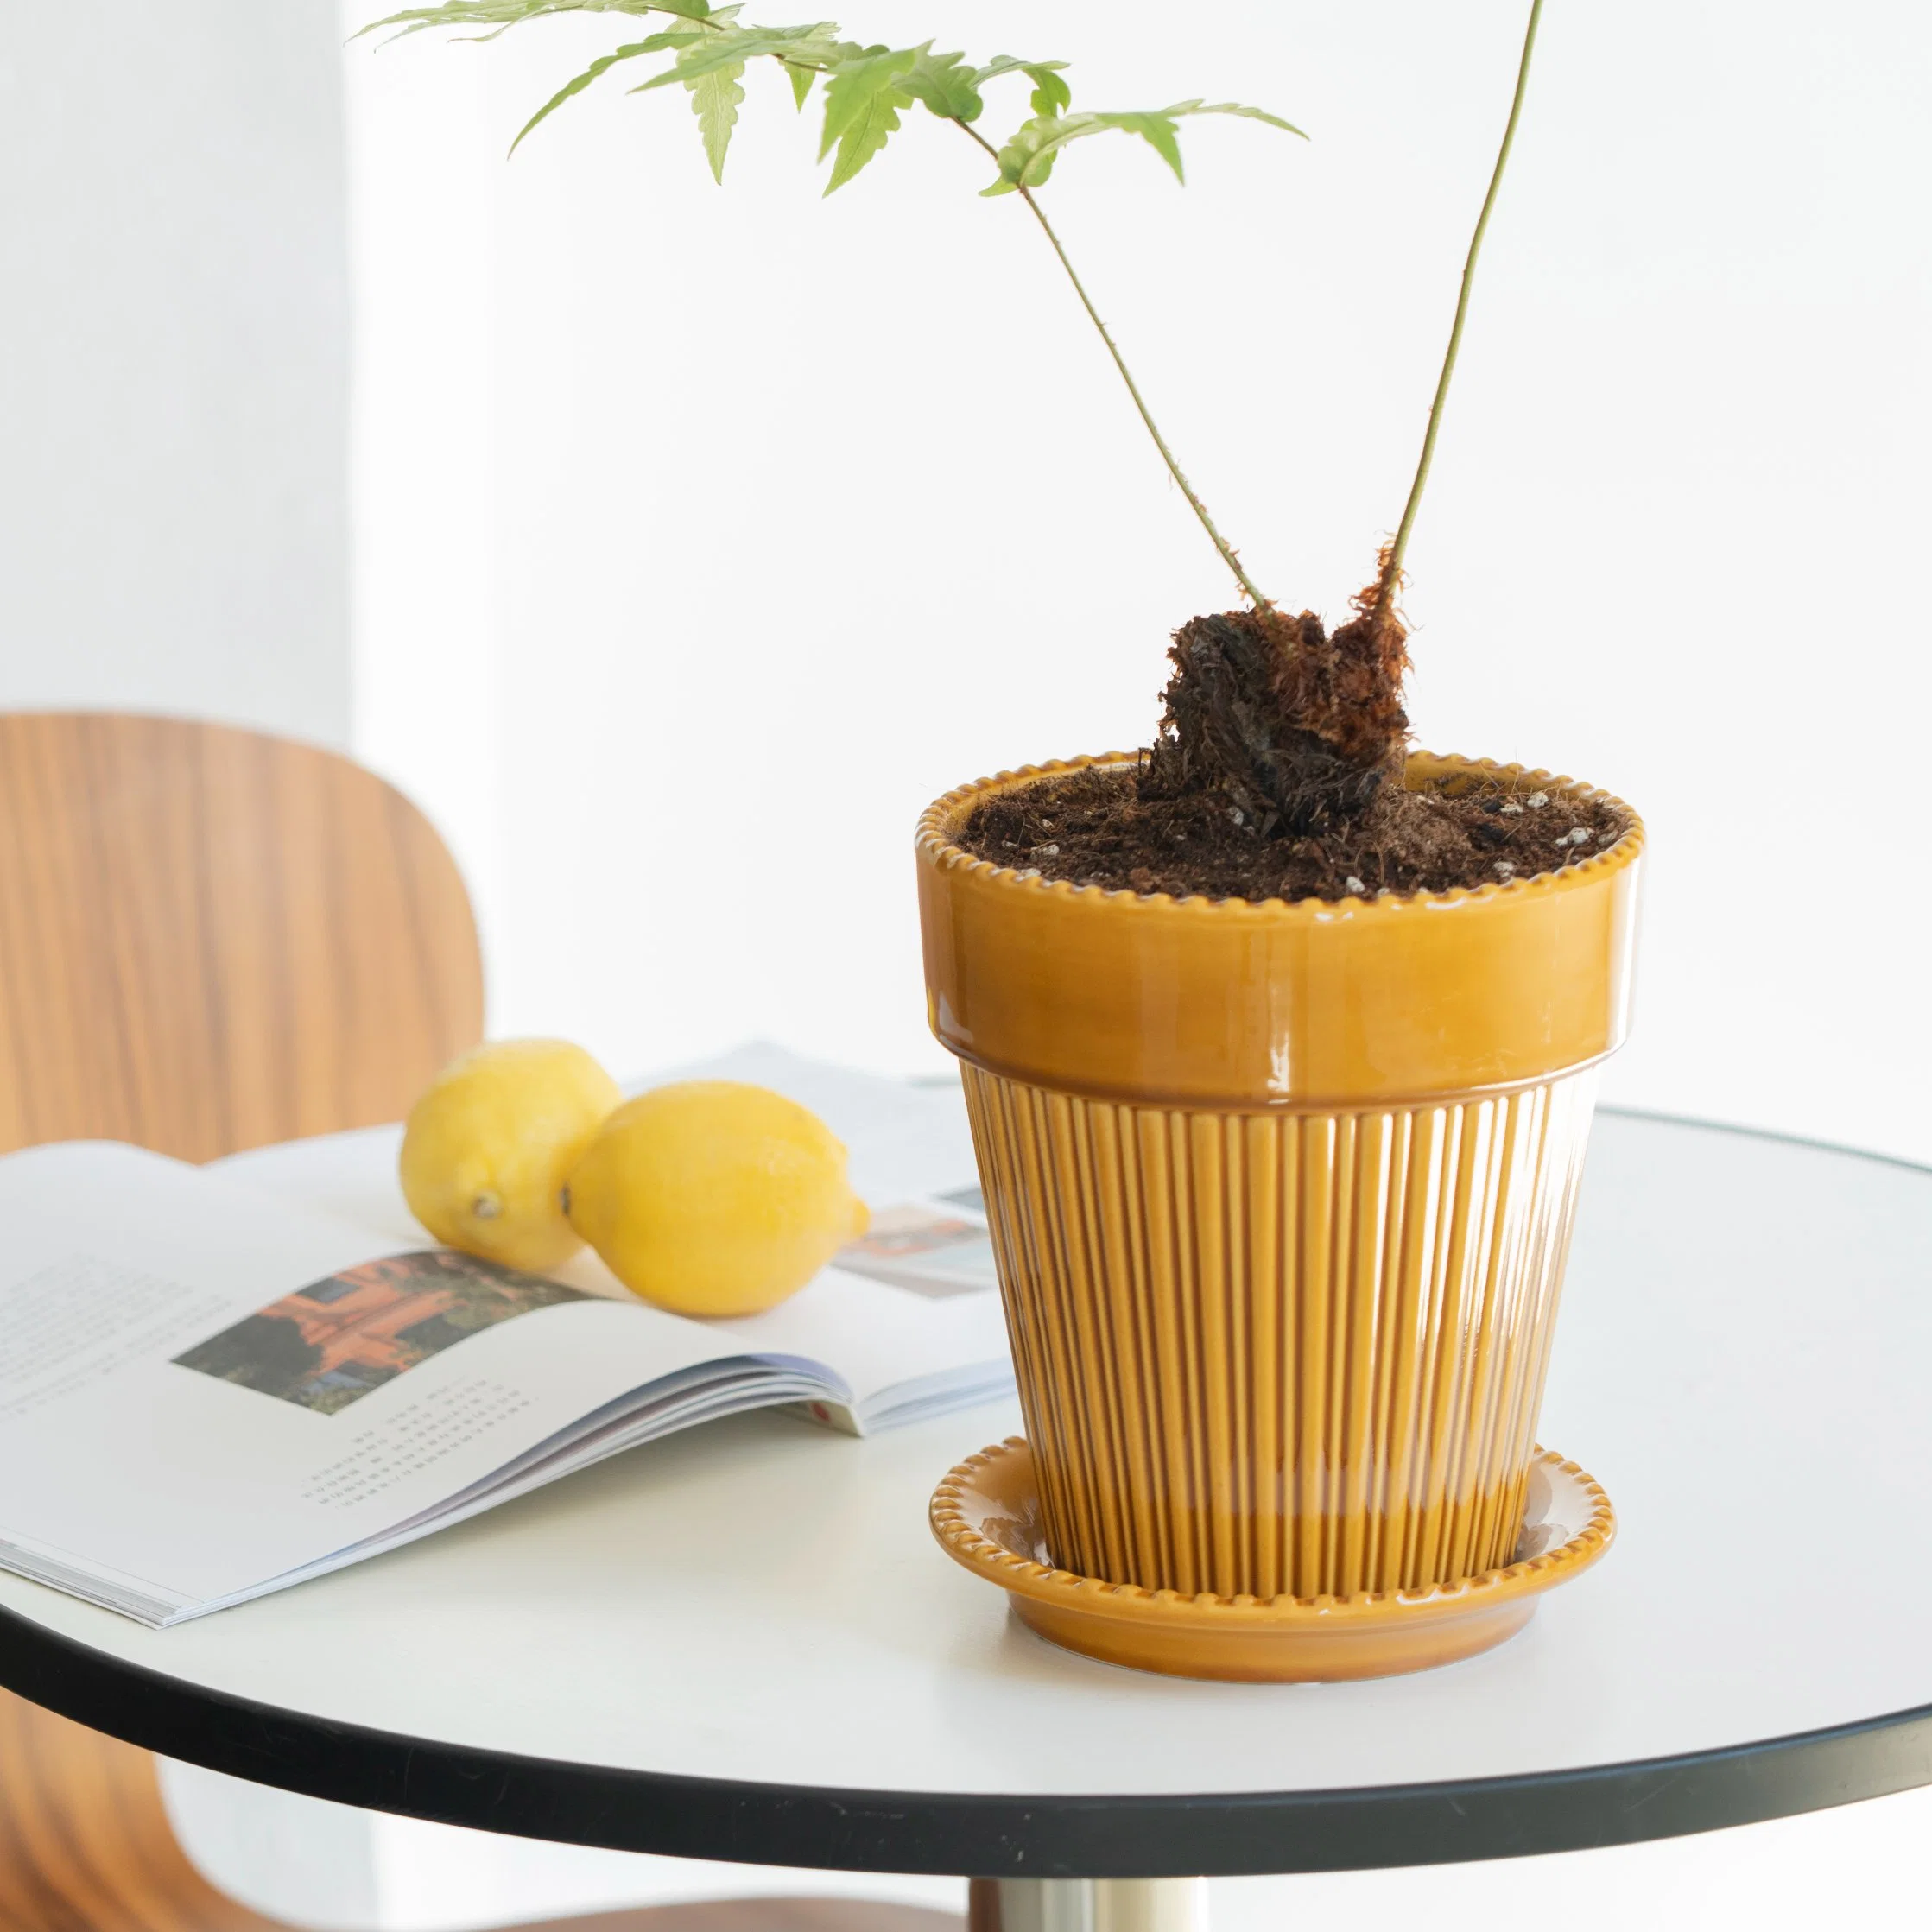 Amostra grátis de vasos redondos de cerâmica para plantas de cactos com prato de decoração básica personalizada para casa, jardim e escritório.